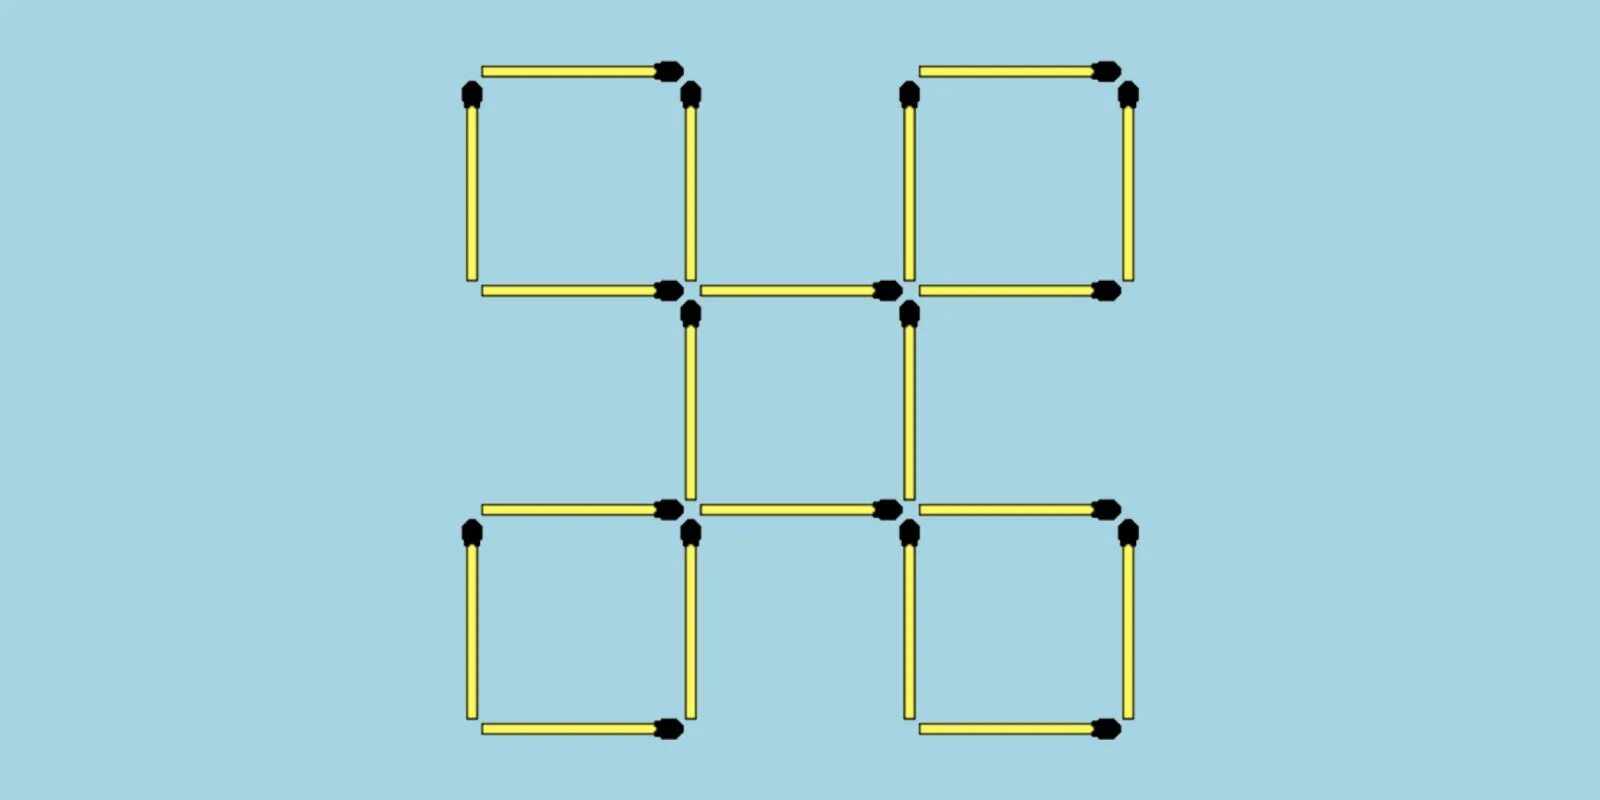 4 чтобы получилось 6. Переложить 2 спички чтобы получилось 6 квадратов. Прямоугольник из спичек. Переместить две спички чтобы получилось. Переместите 2 спички чтобы получилось 5 квадратов.